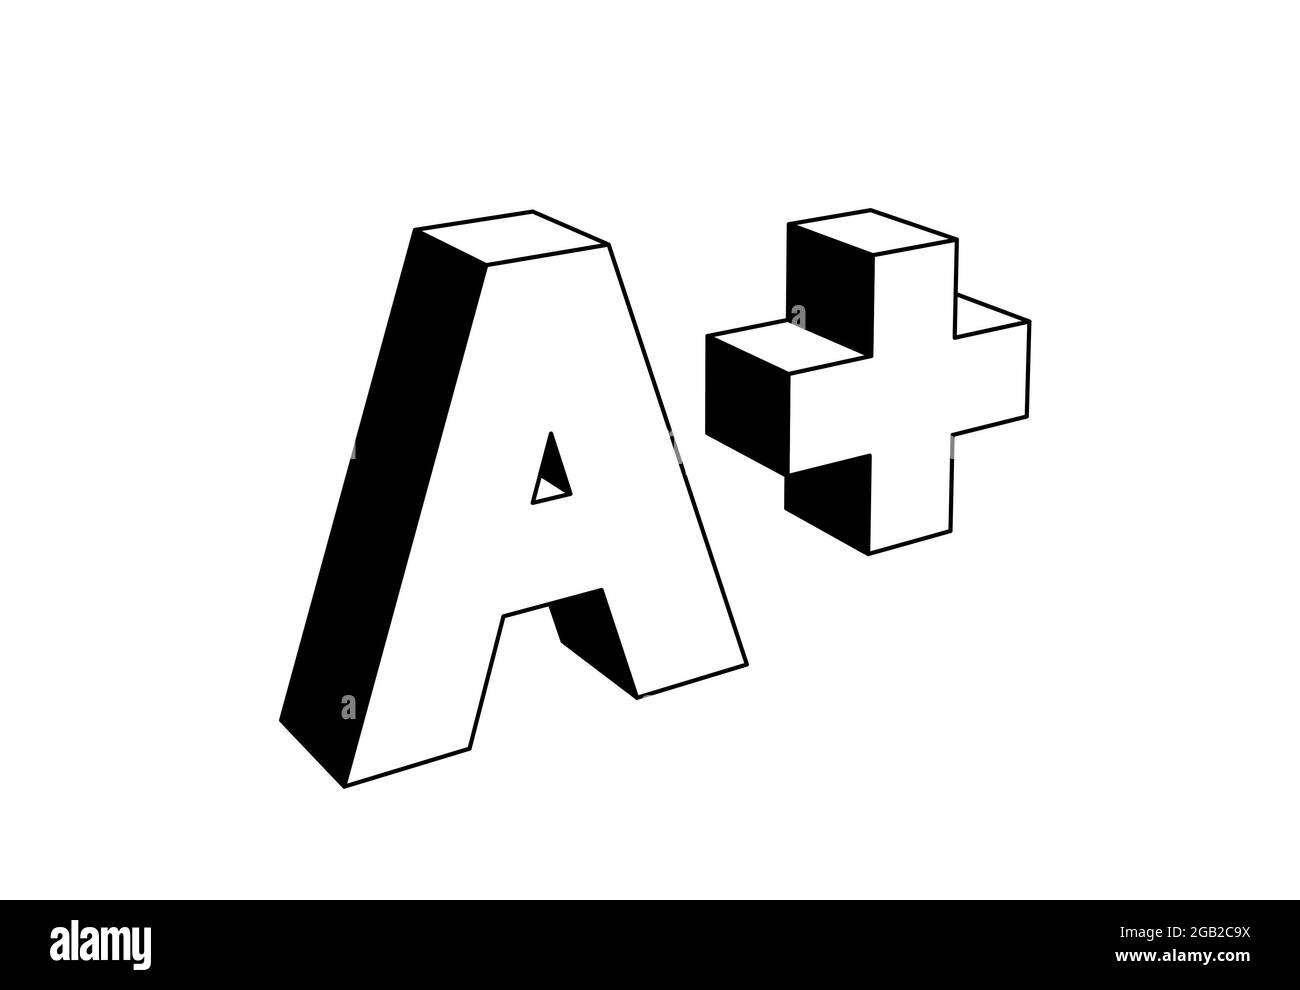 una lettera più, sistema di classificazione scolastico basato su lettere alfabetiche, illustrazione 3d in bianco e nero, stile icona Foto Stock